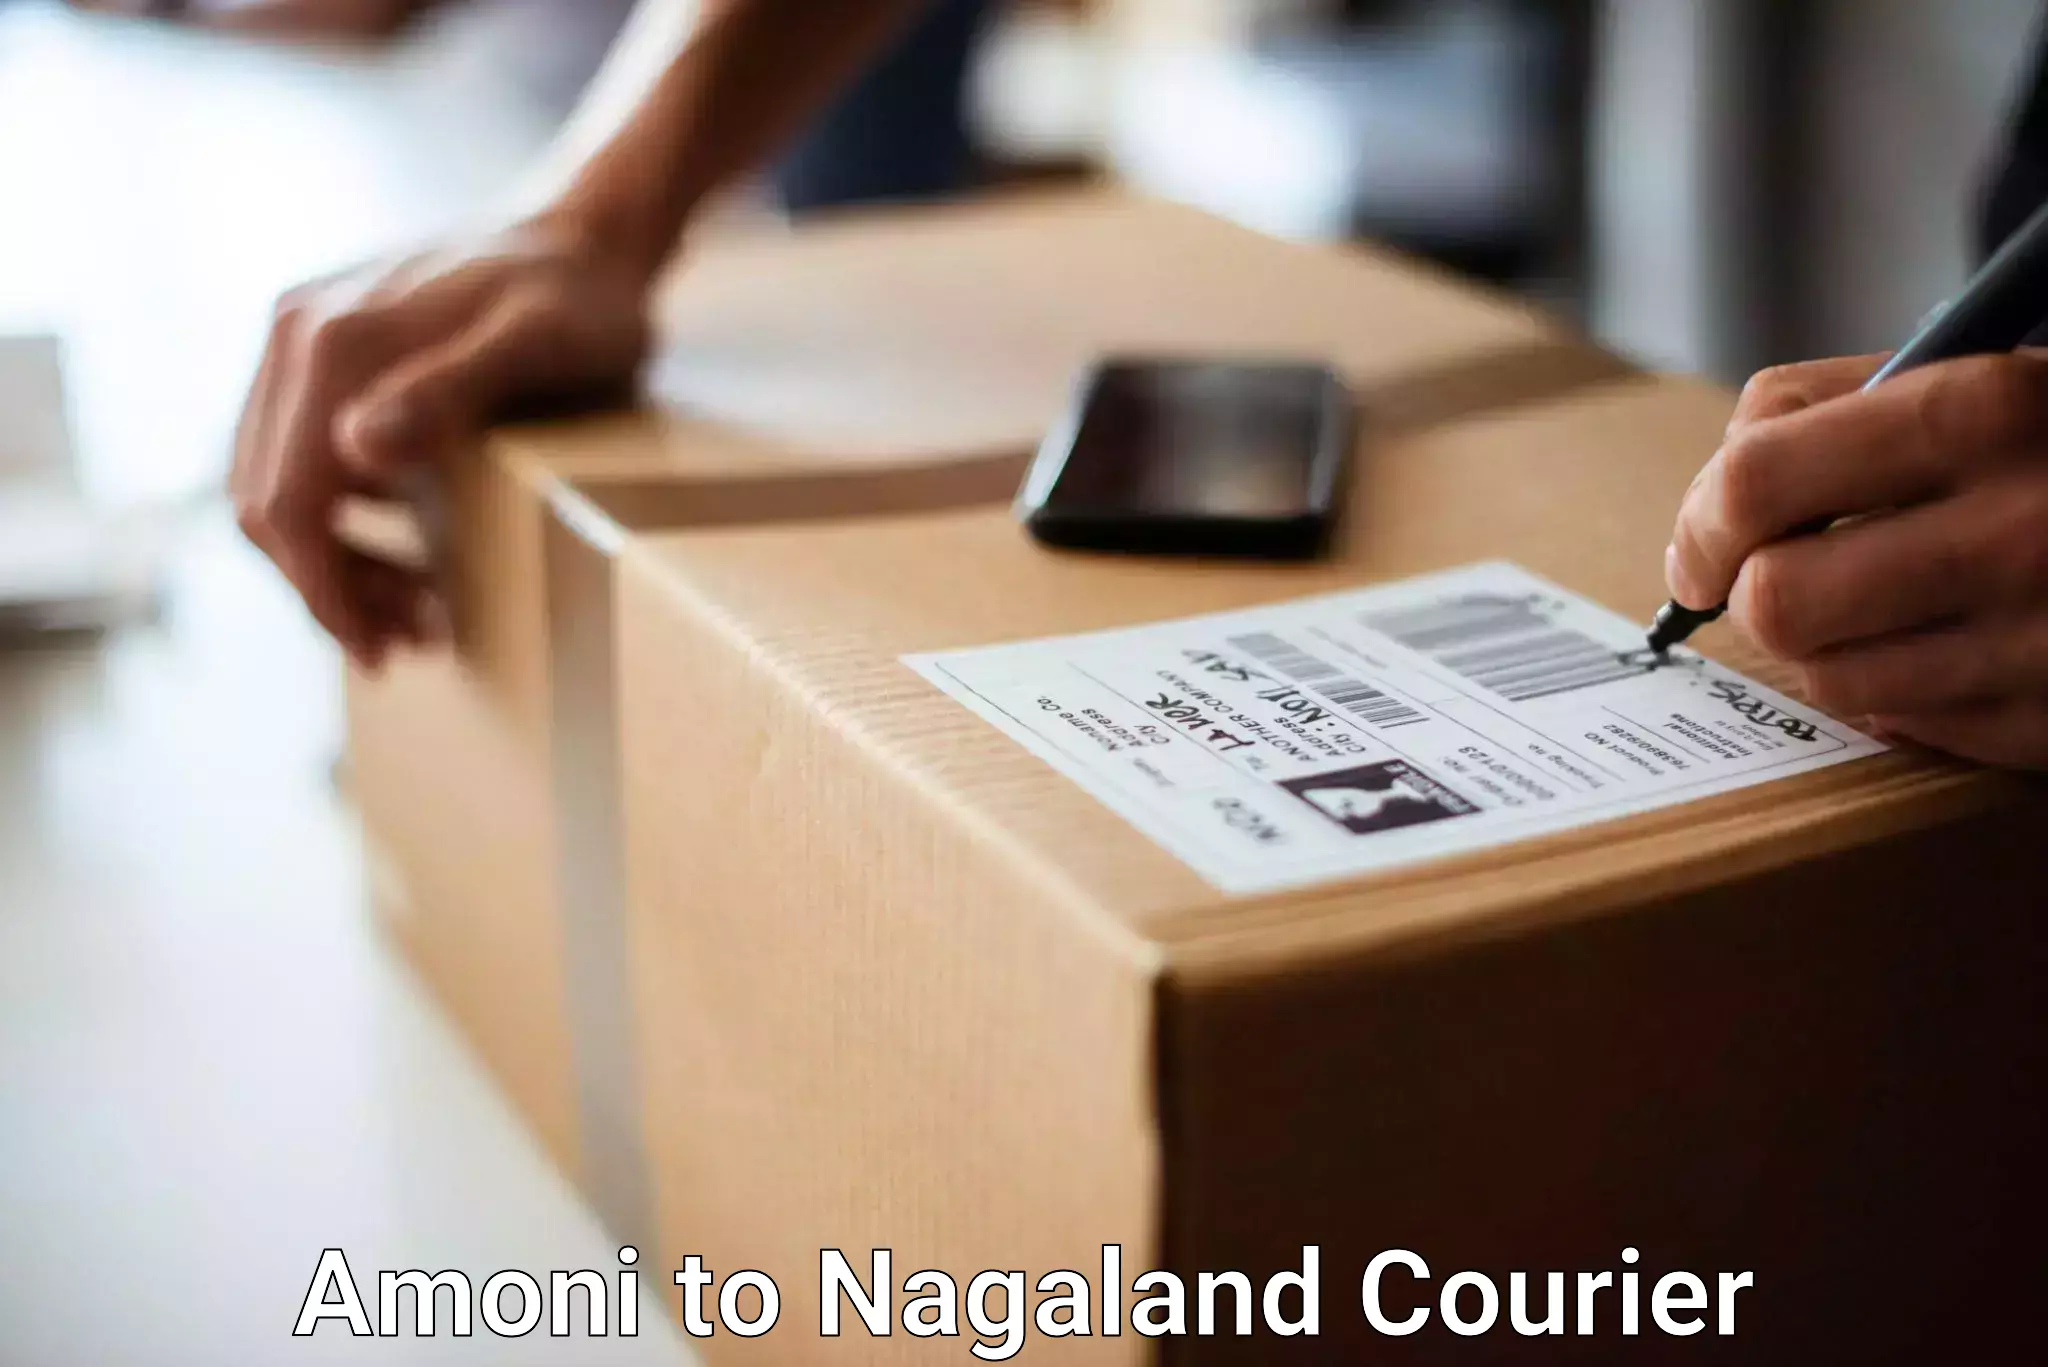 Luggage transport consultancy Amoni to NIT Nagaland